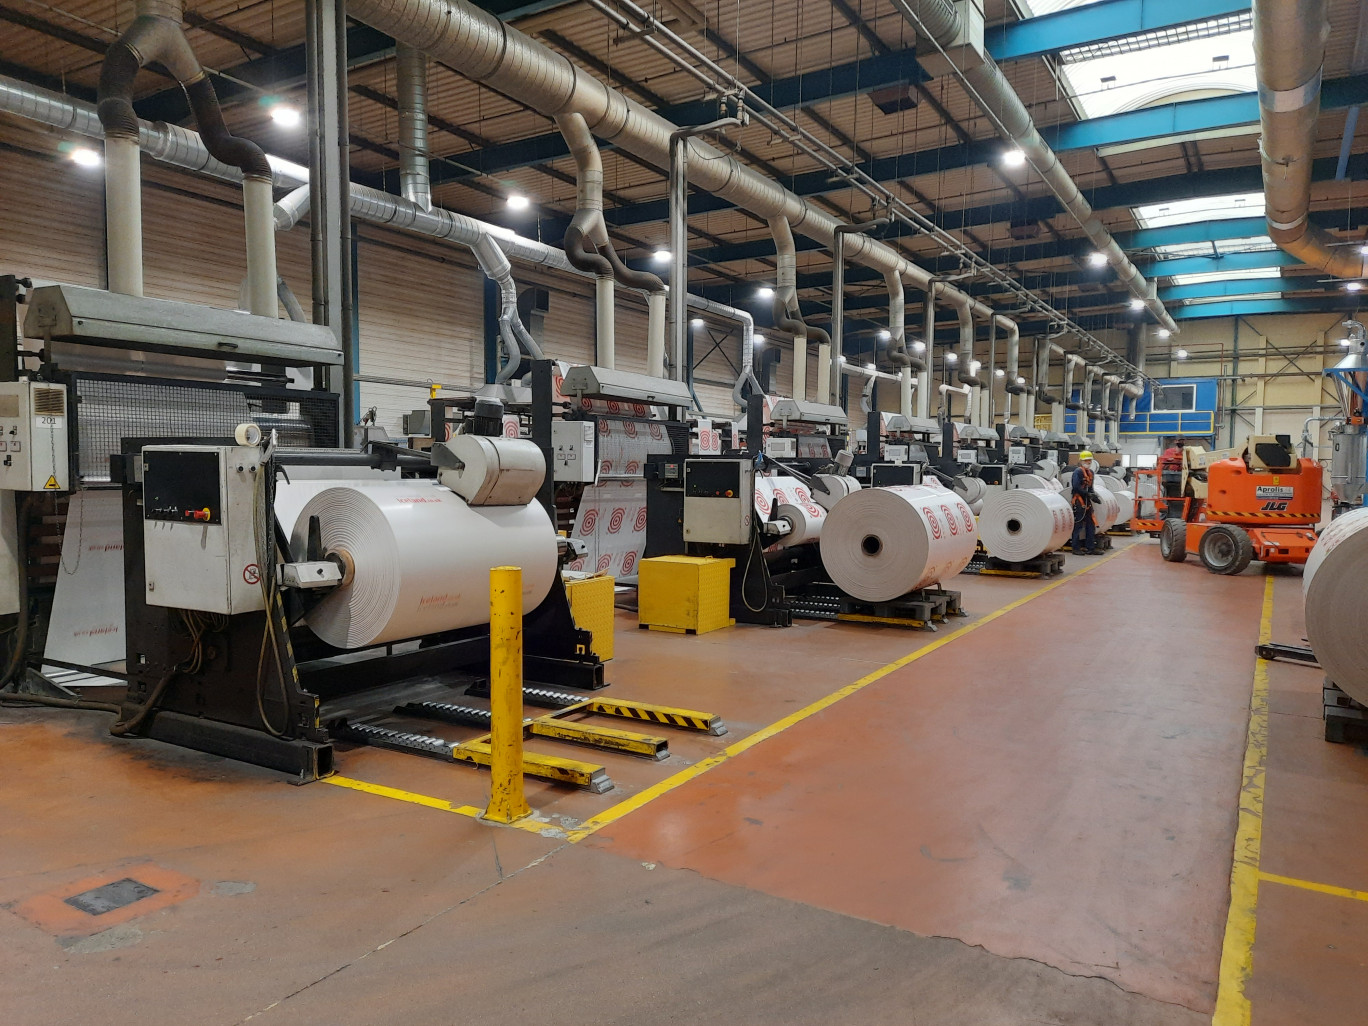 La visite de l’usine TT Plast a permis de comprendre quelles innovations pouvaient être utilisées pour réduire l’empreinte carbone des entreprises de la plasturgie. (© Aletheia Press / L.Peron)